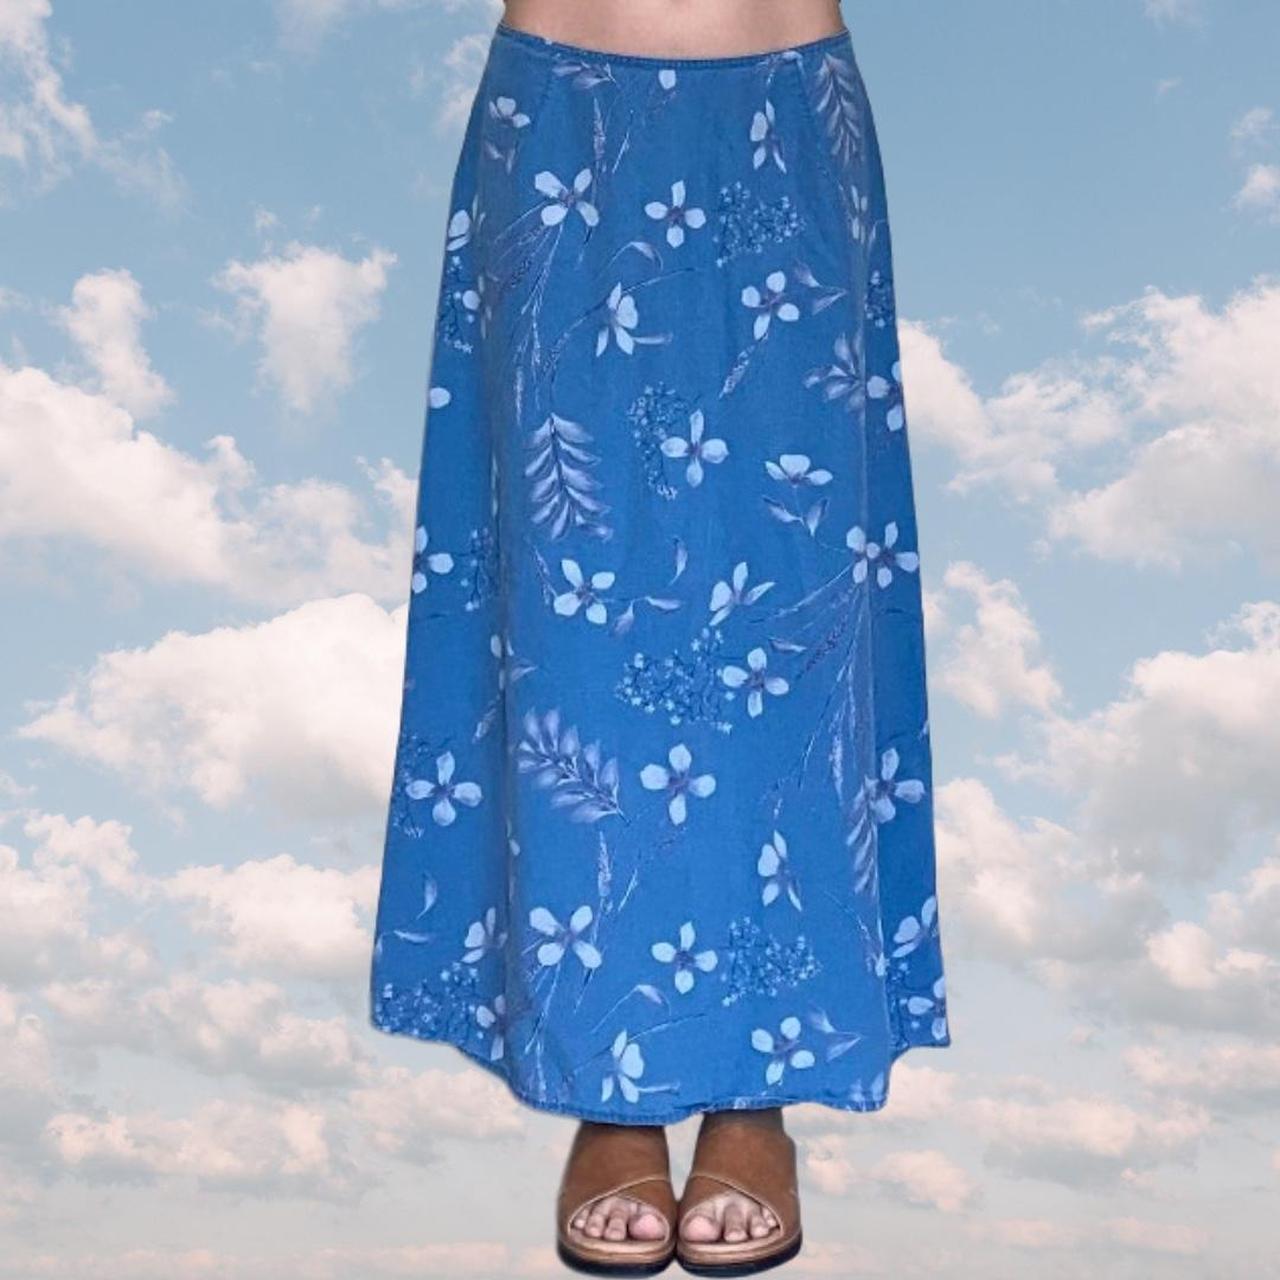 Liz Claiborne blue floral print maxi skirt with... - Depop